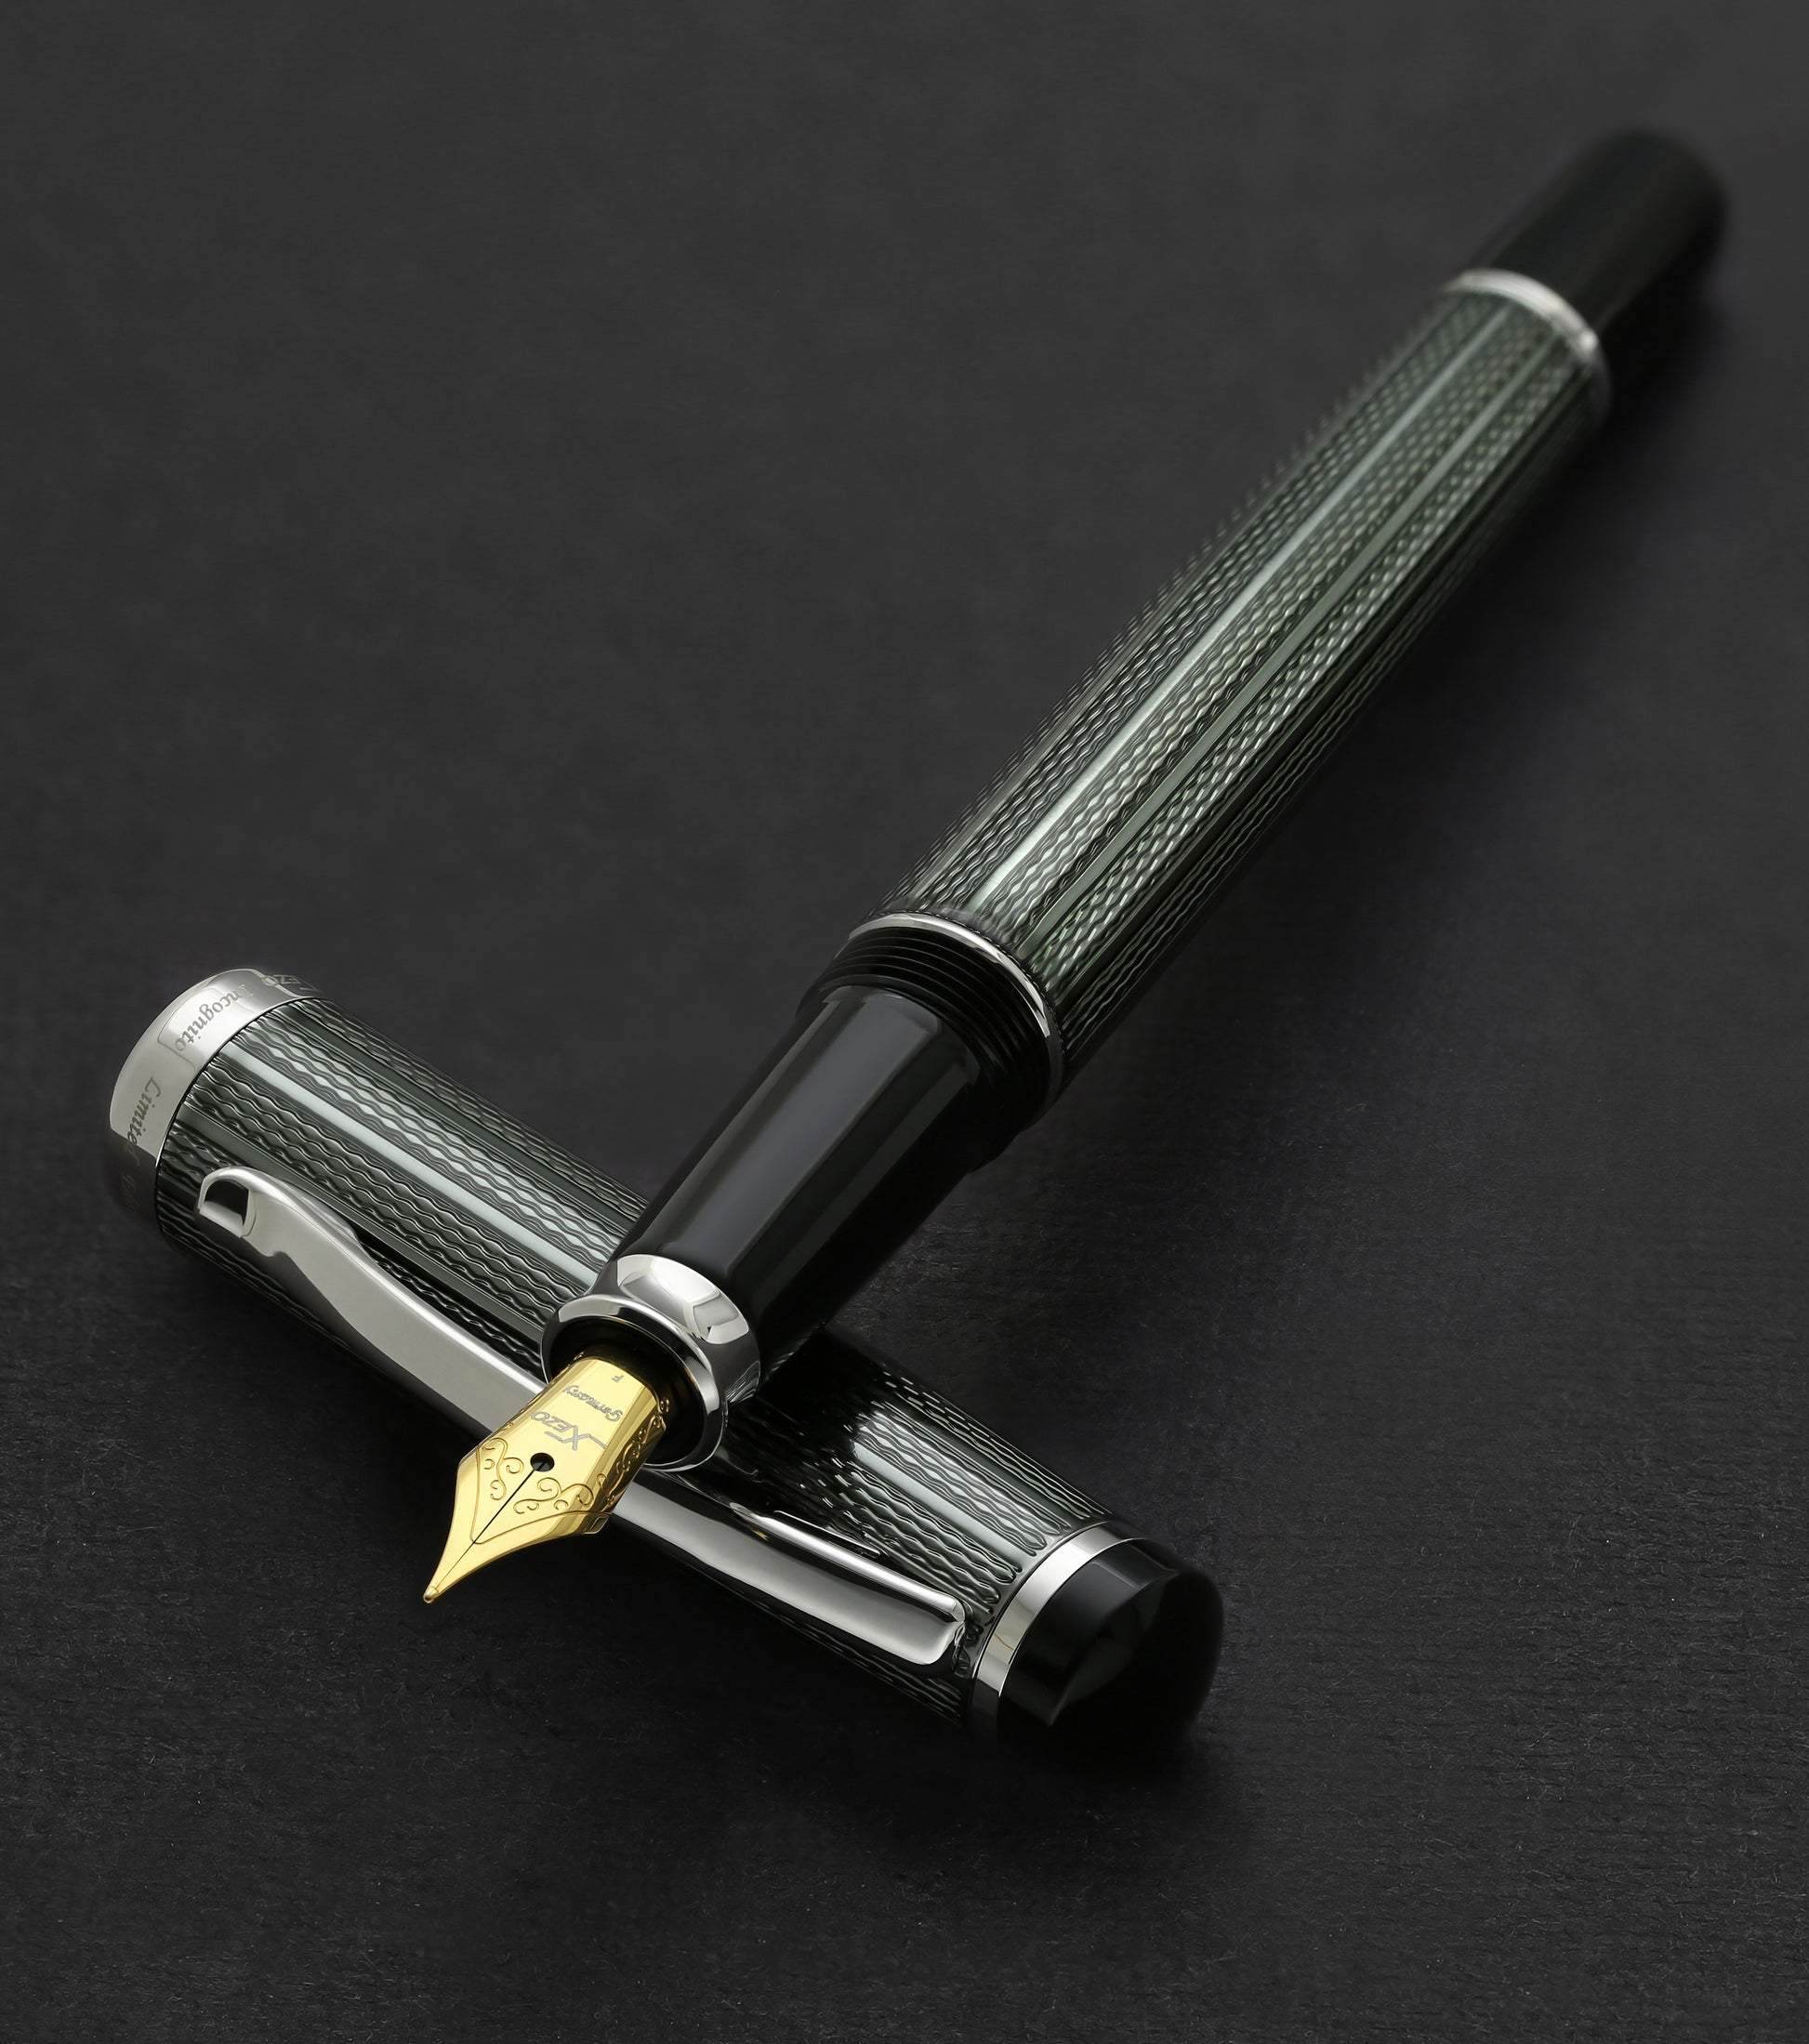 Xezo - Incognito Zinc F-1 fountain pen resting on its cap